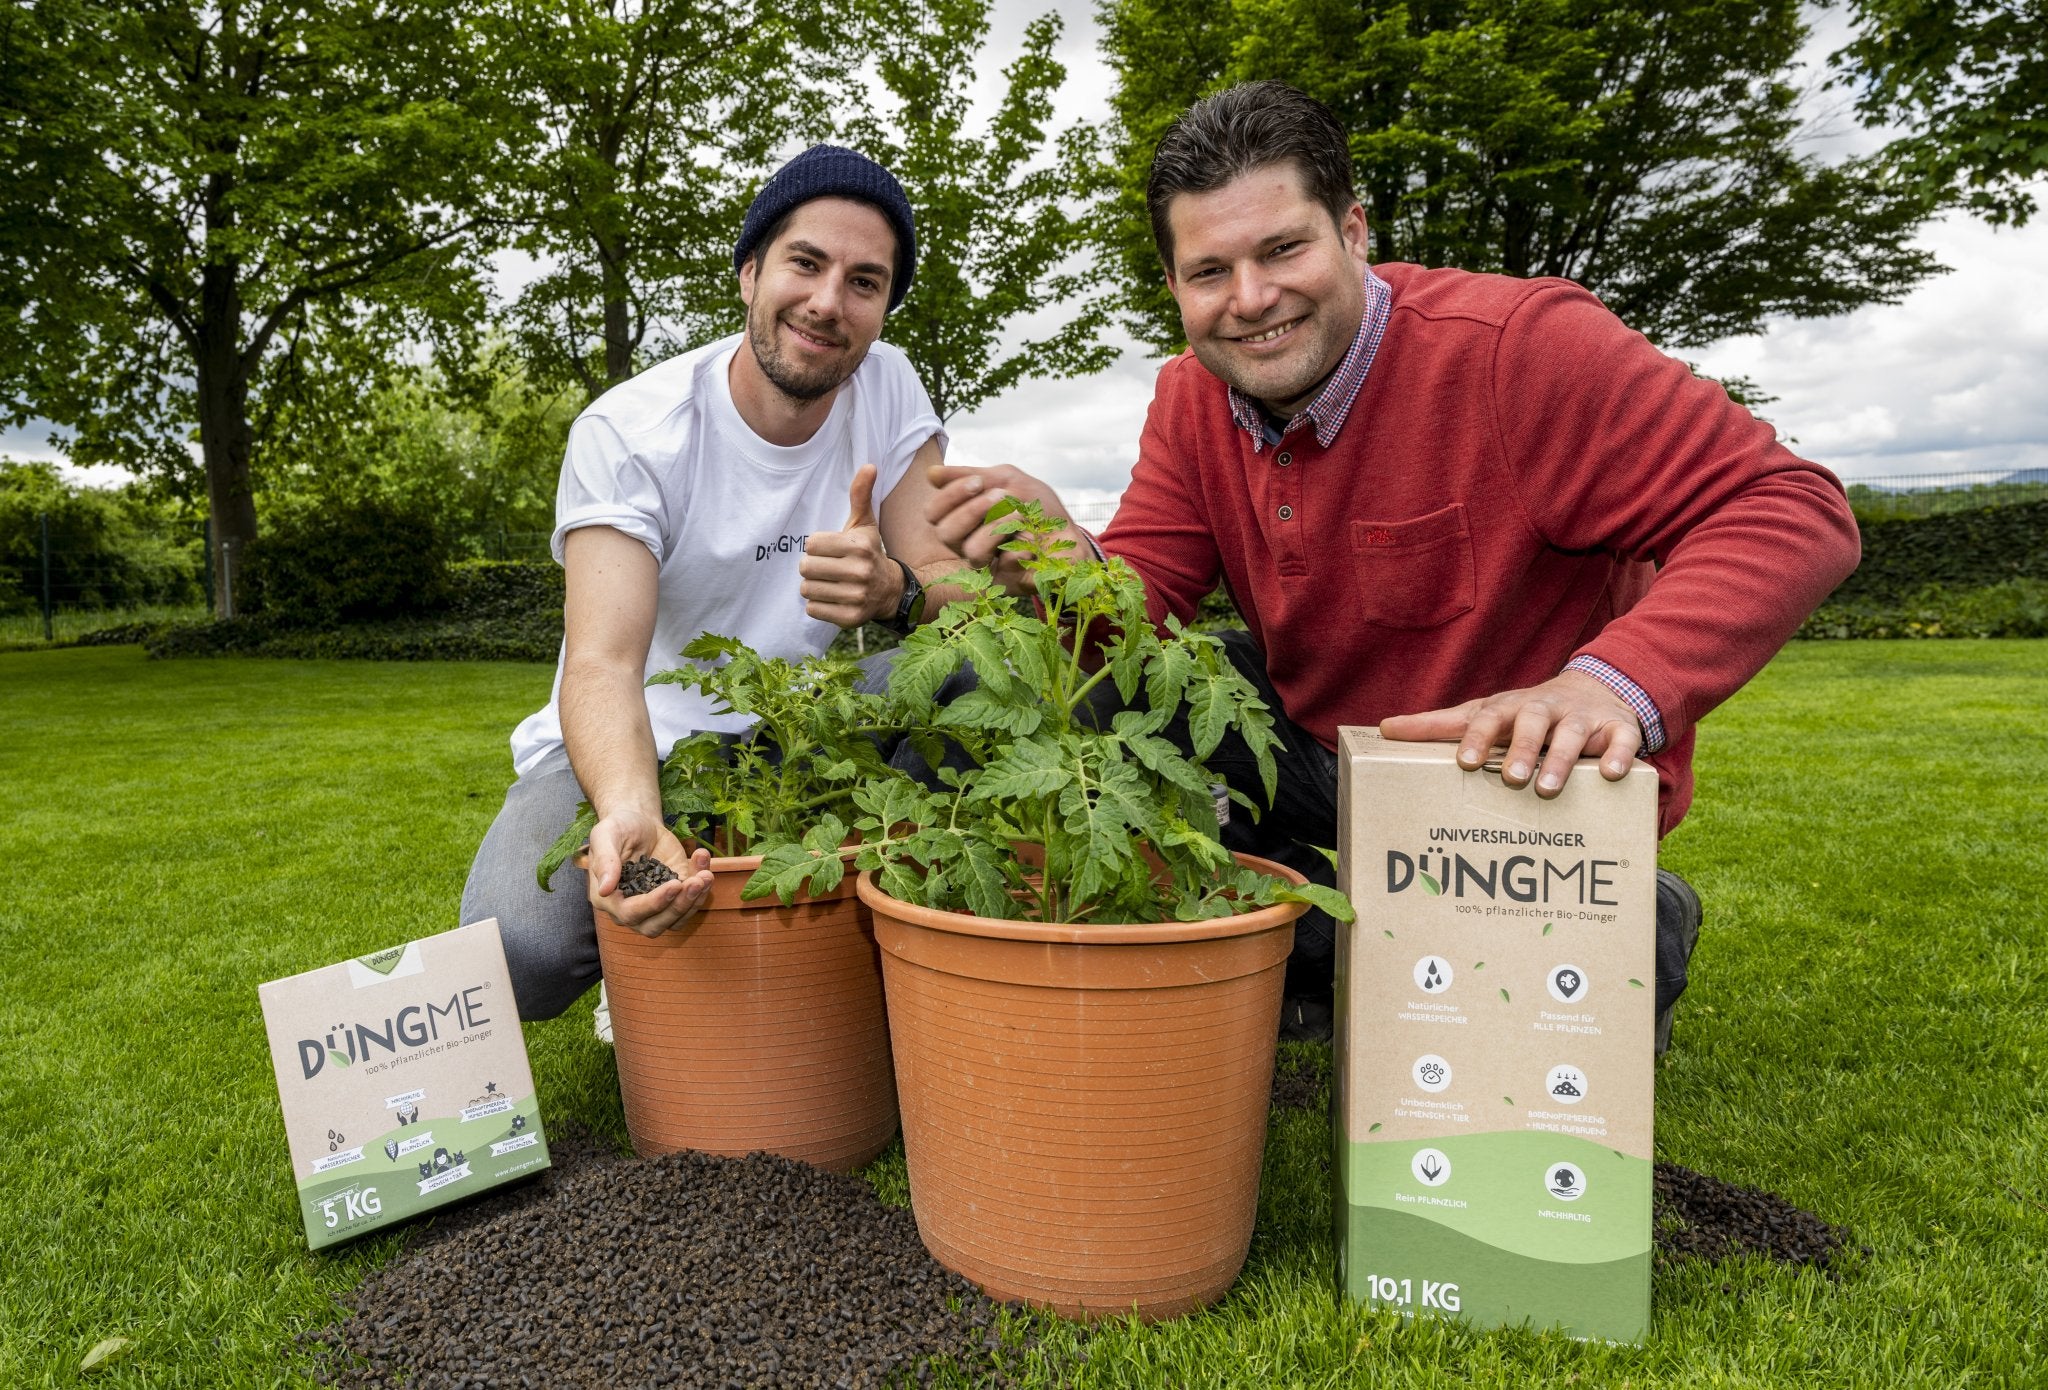 Bunte Auswahl von DüngMe Bio-Universaldünger in umweltfreundlicher Verpackung, ideal für ökologisches Gärtnern.